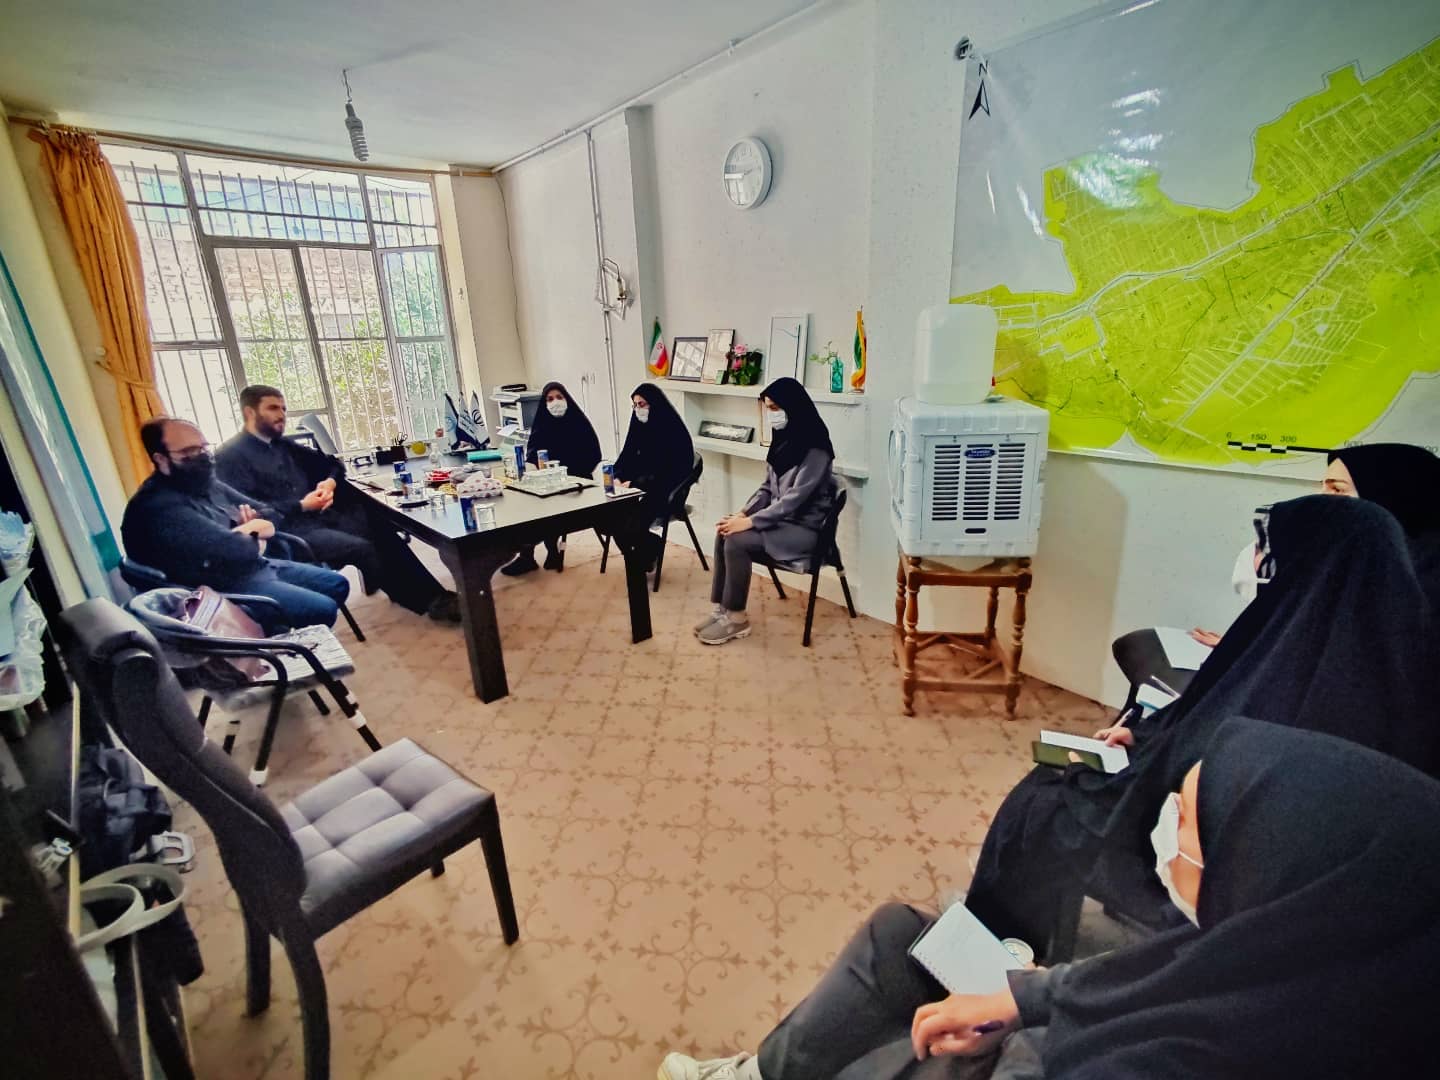 اولین نشست مشترک قرارگاه تحول اجتماعی استان فارس با دفتر تسهیلگری